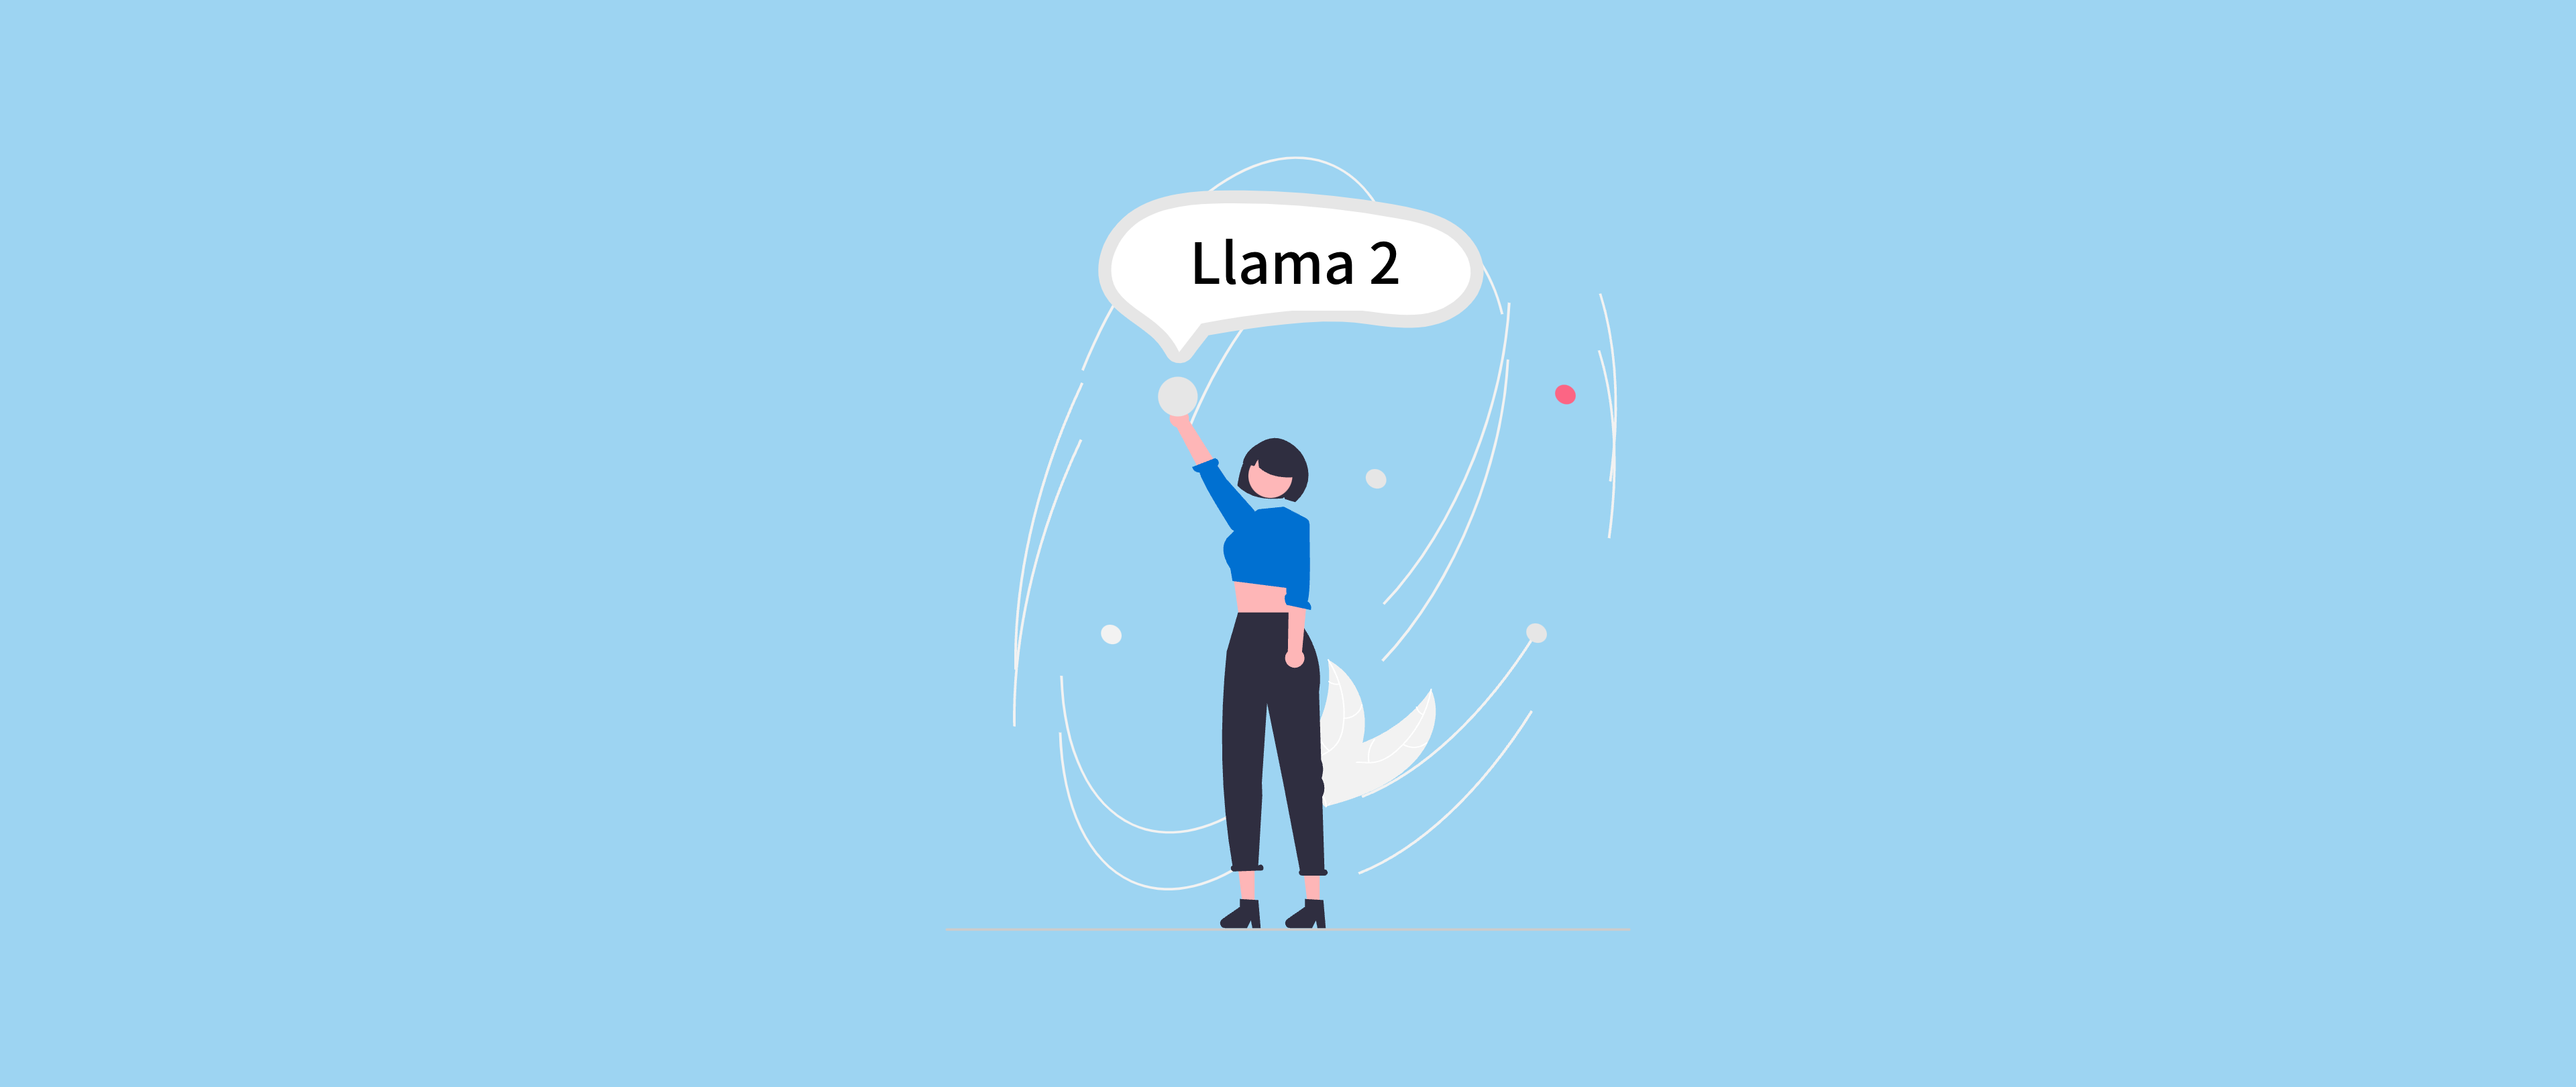 技术速览｜Meta Llama 2 下一代开源大型语言模型